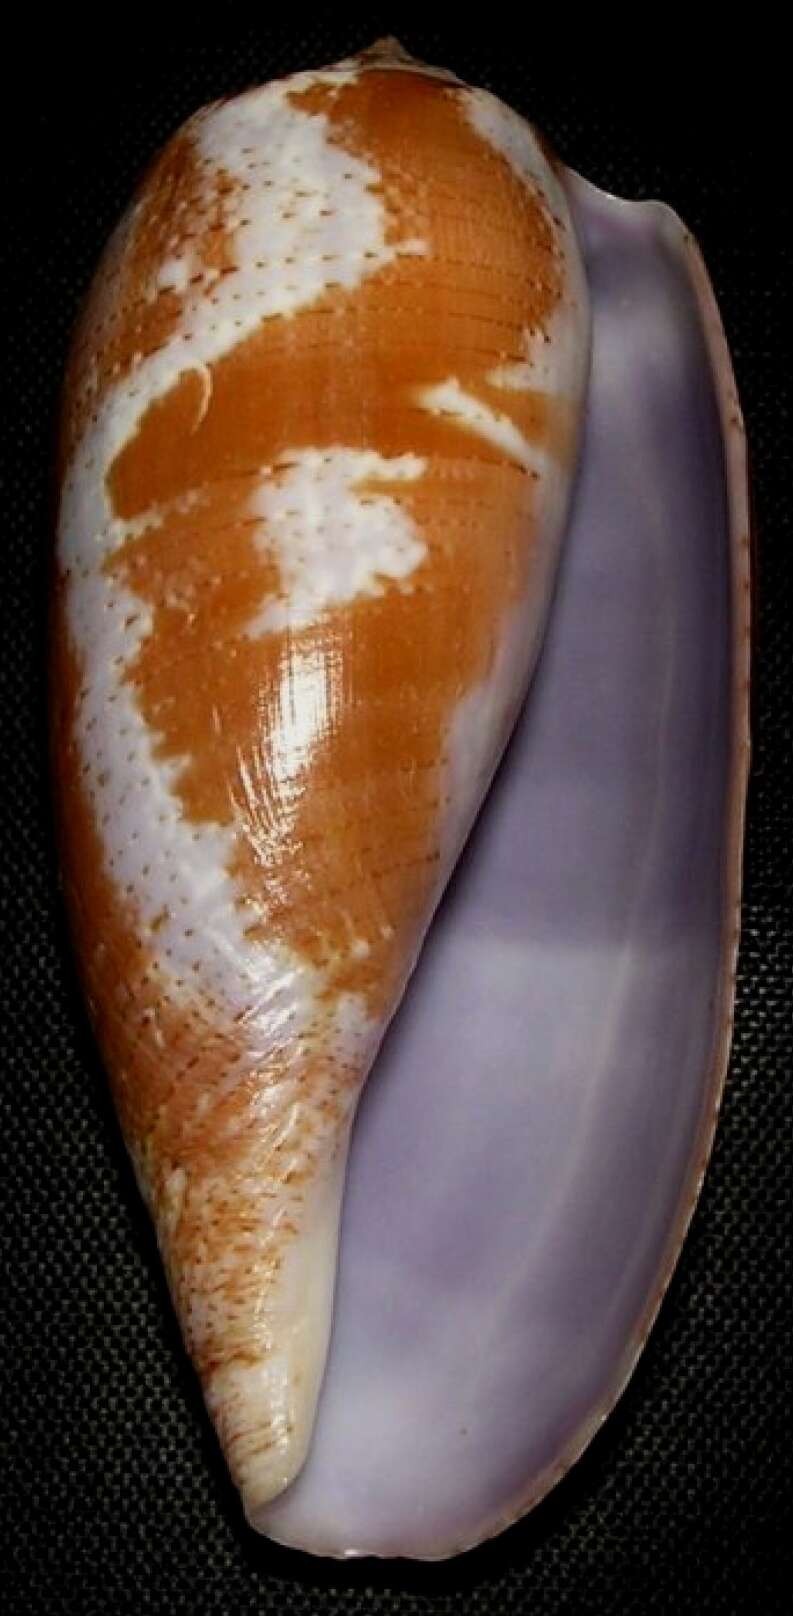 Image of tulip cone